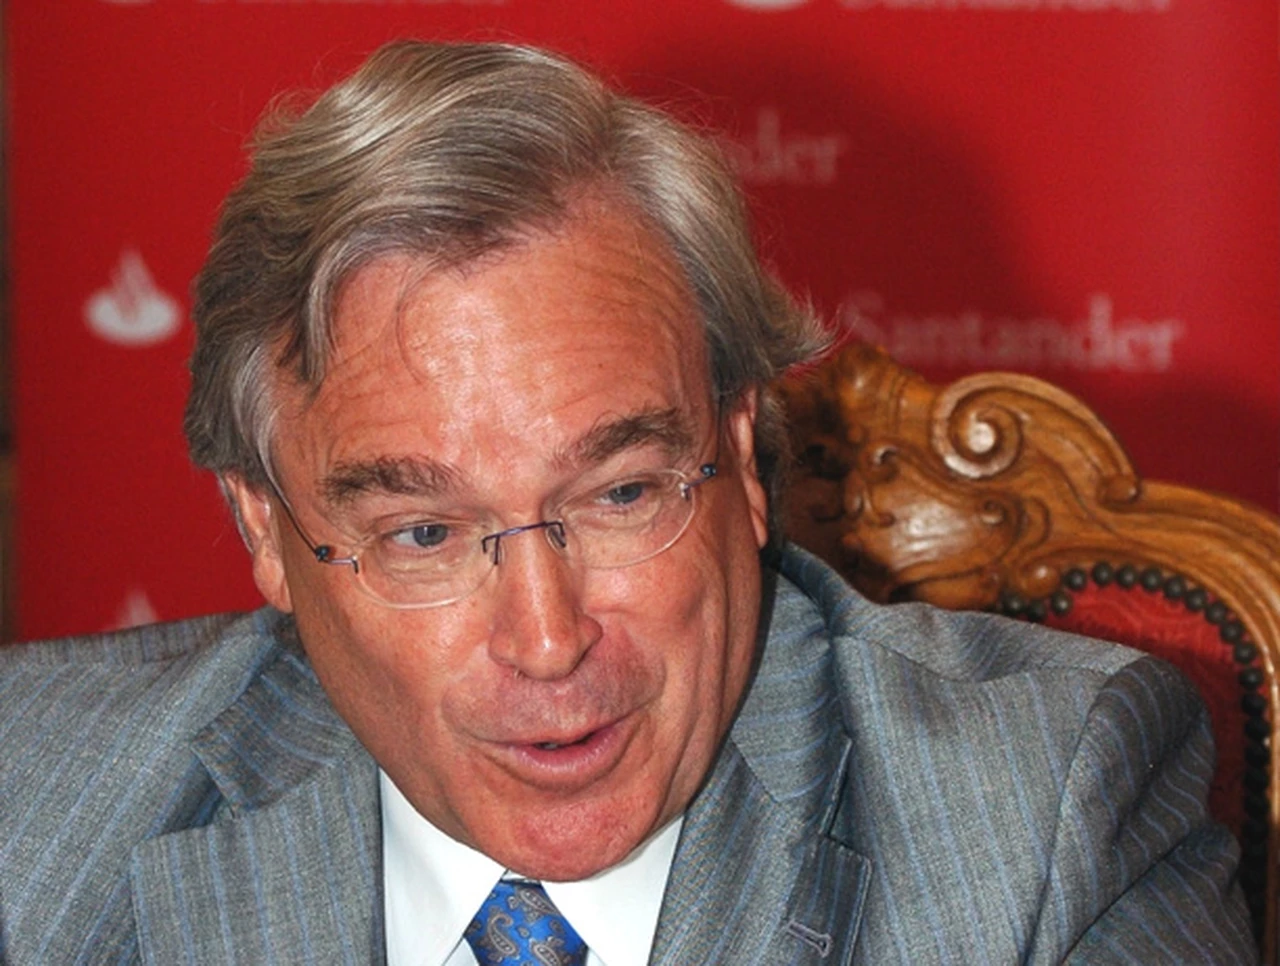 Renunció el máximo responsable para América latina de Banco Santander